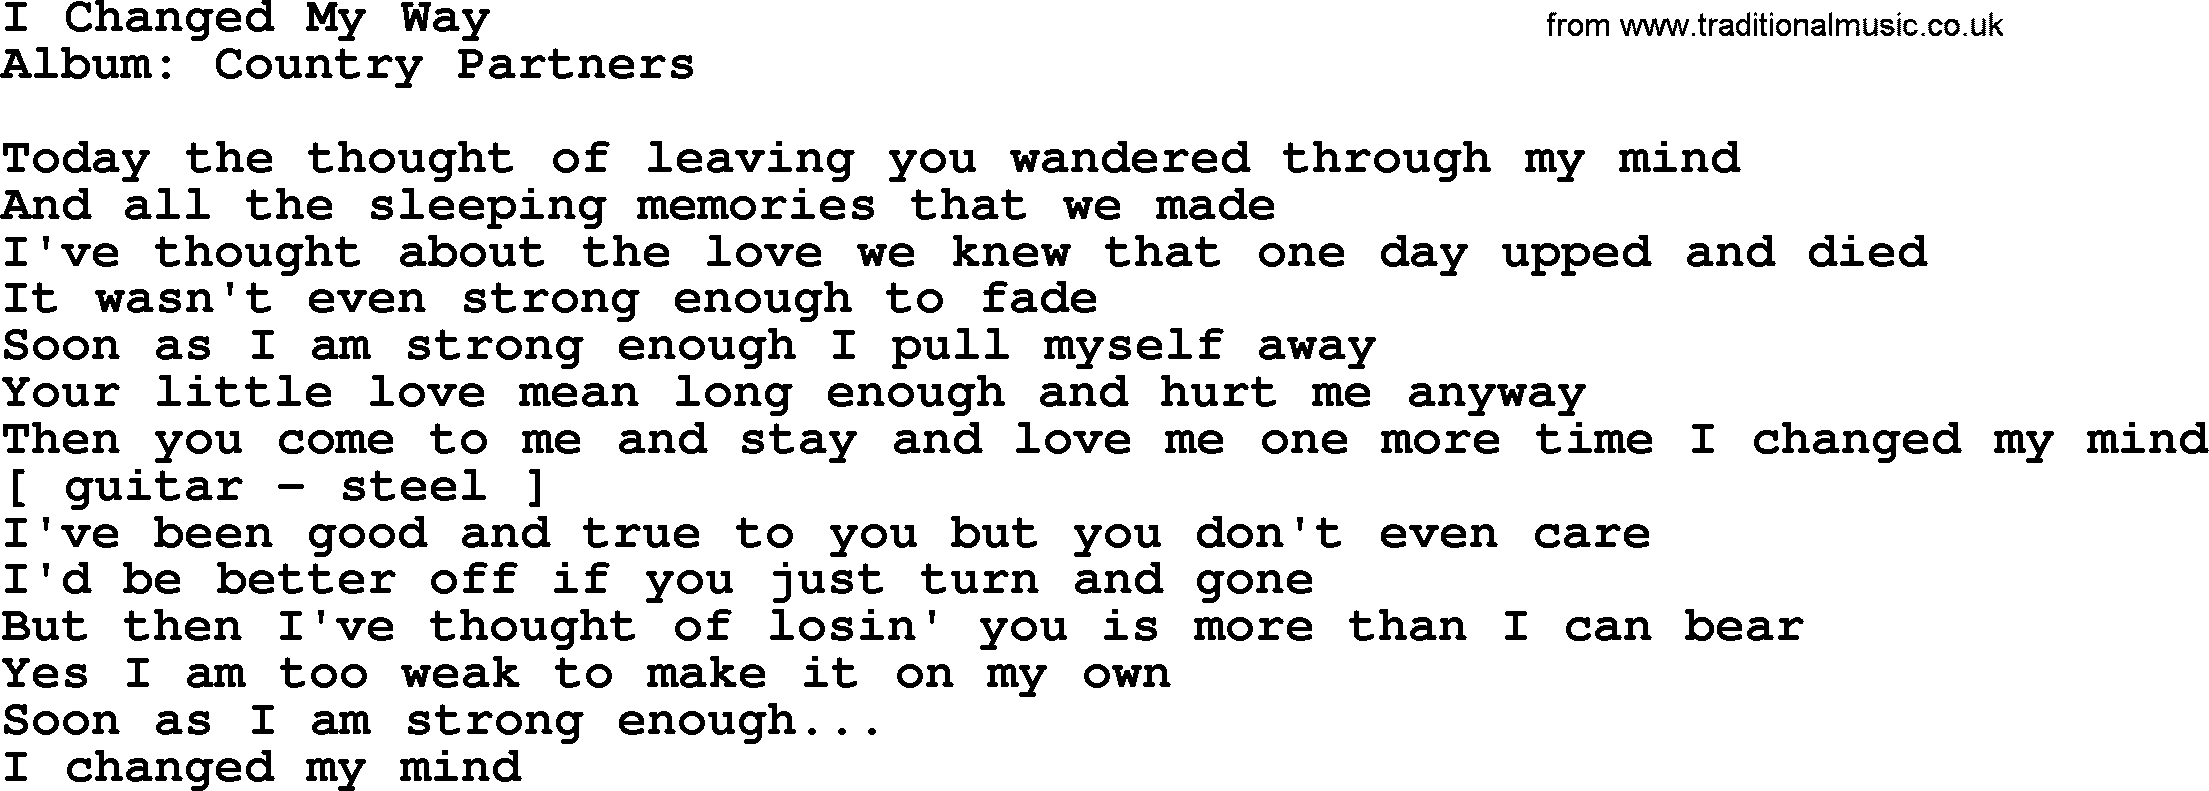 Loretta Lynn song: I Changed My Way lyrics